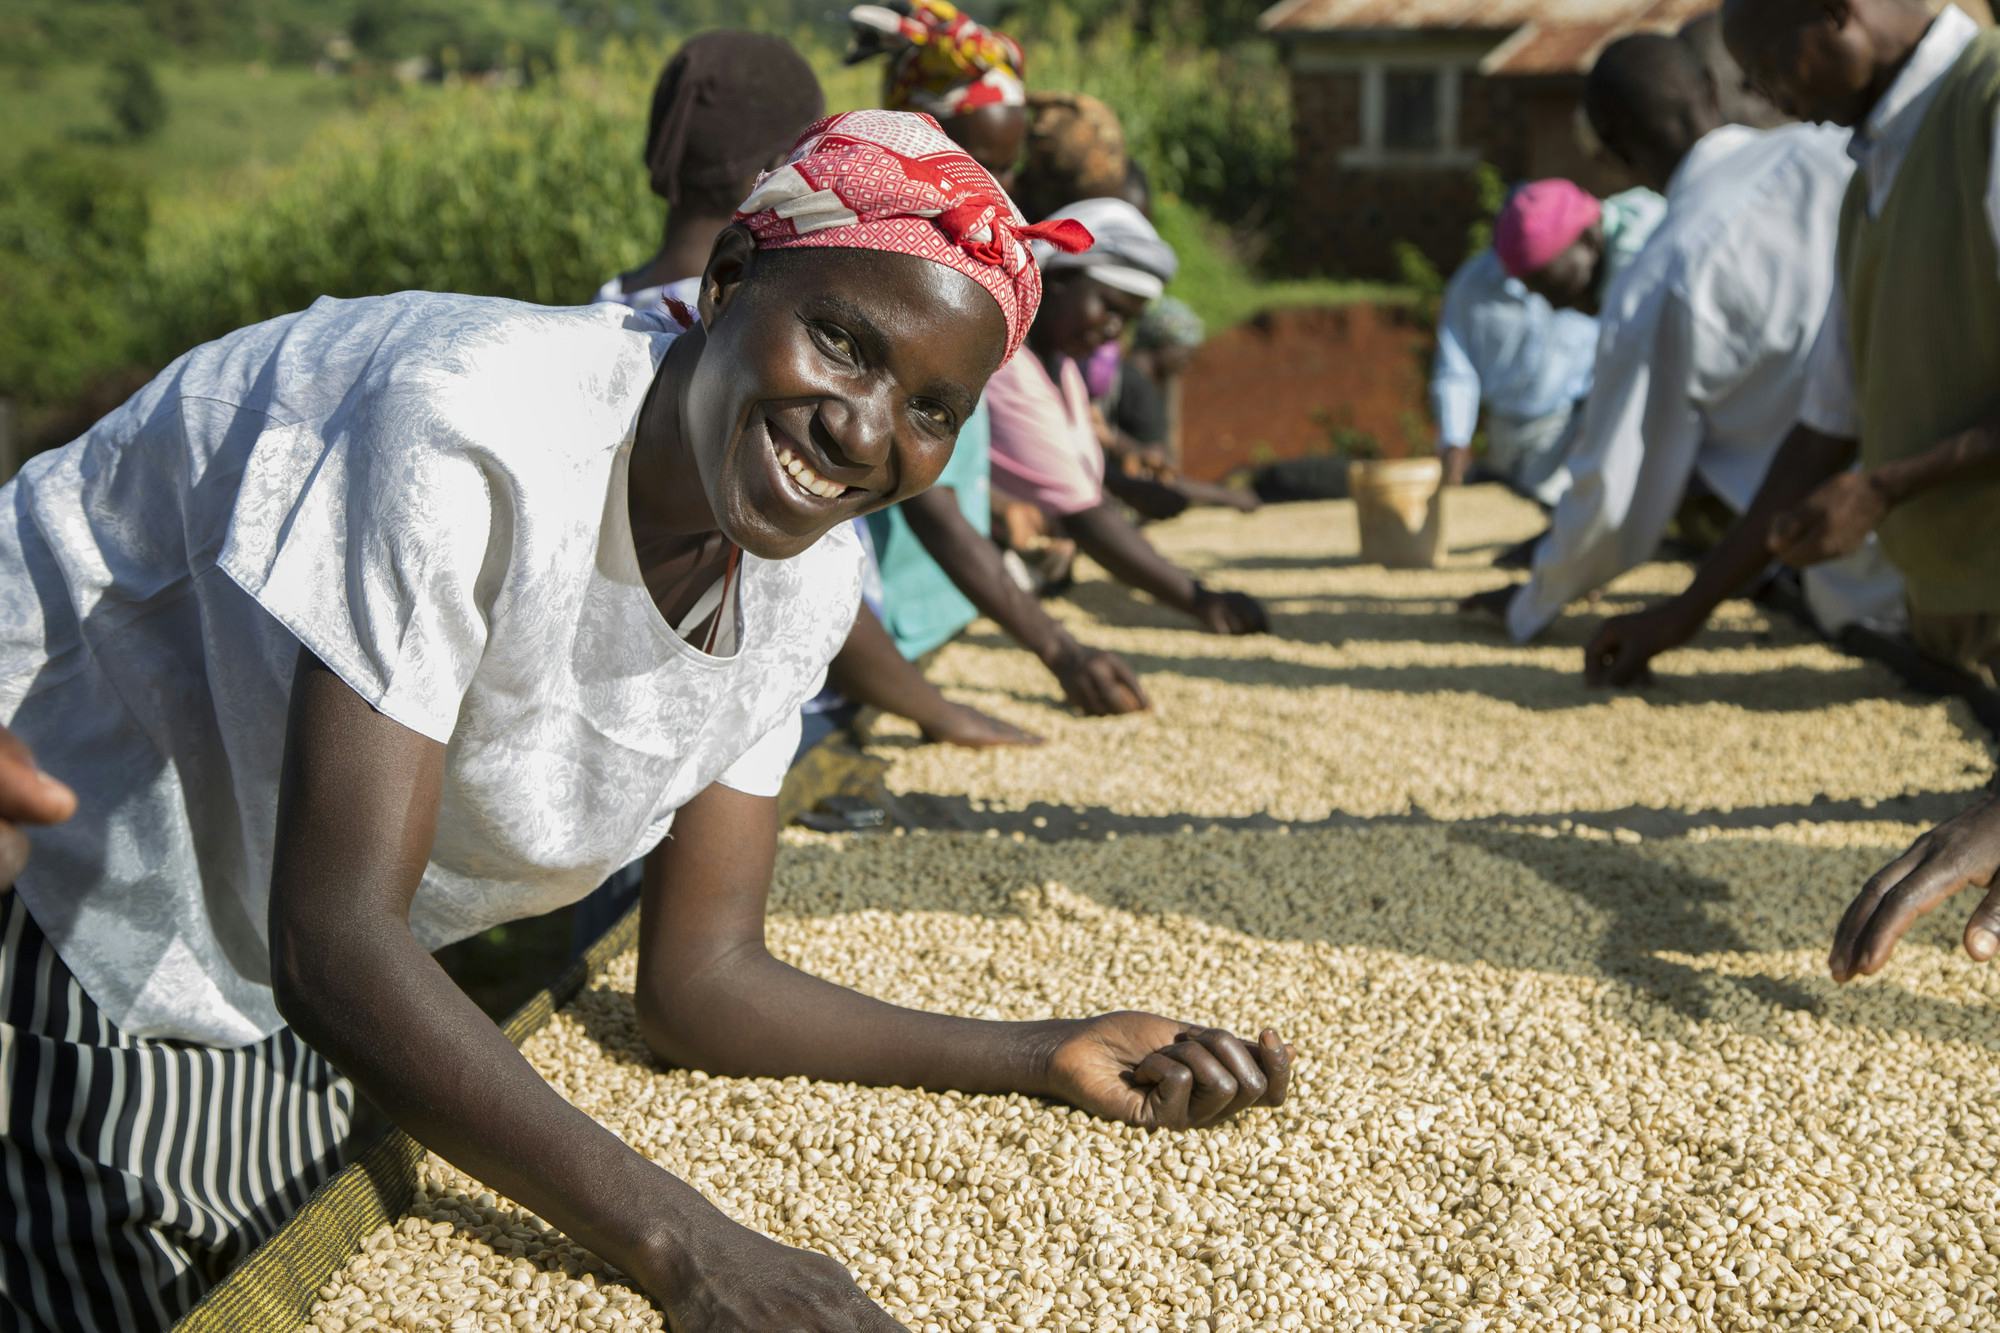 Koffie oogsten in Kenia: naar de oorsprong van de boon